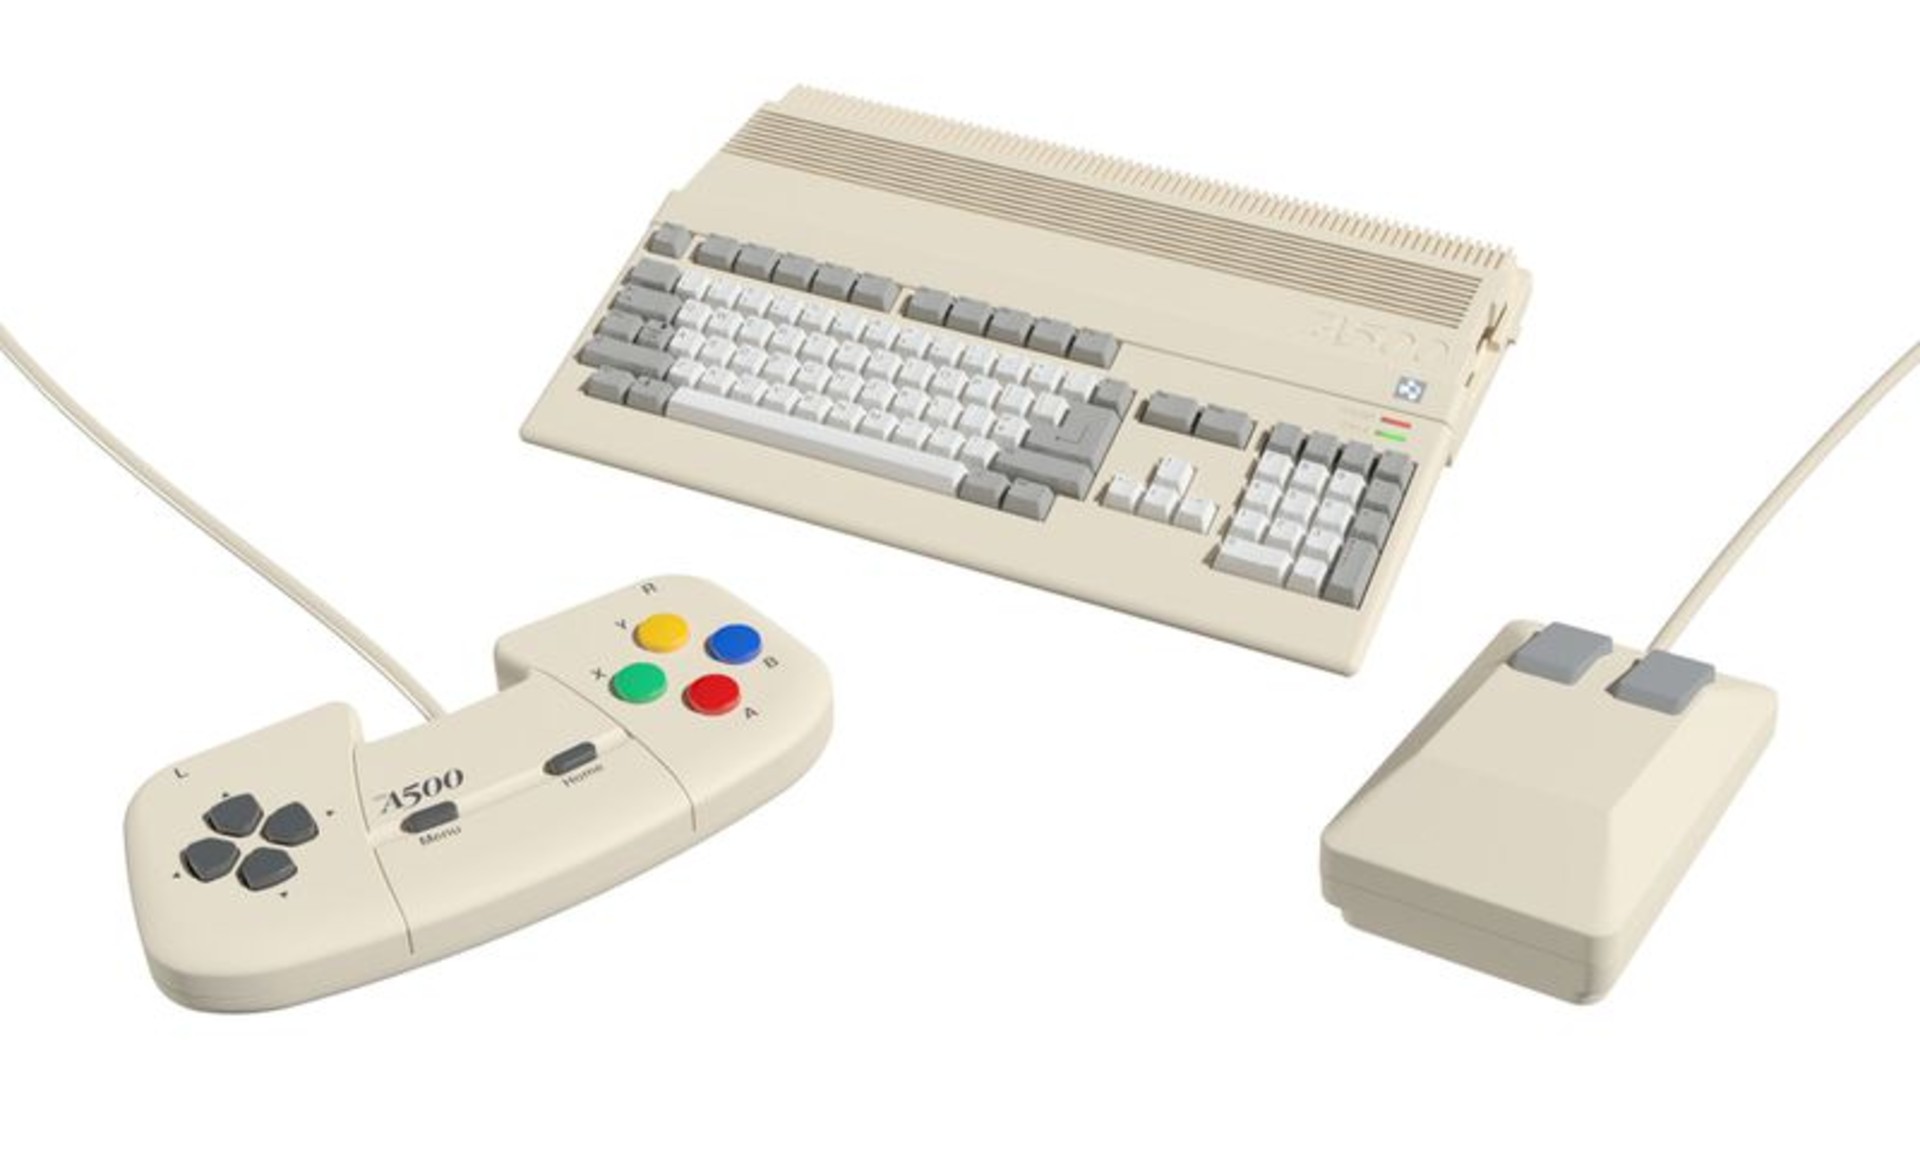 Commodore Amiga 500 เครื่องเกมยุค 80s กลับมาวางจำหน่ายอีกครั้ง